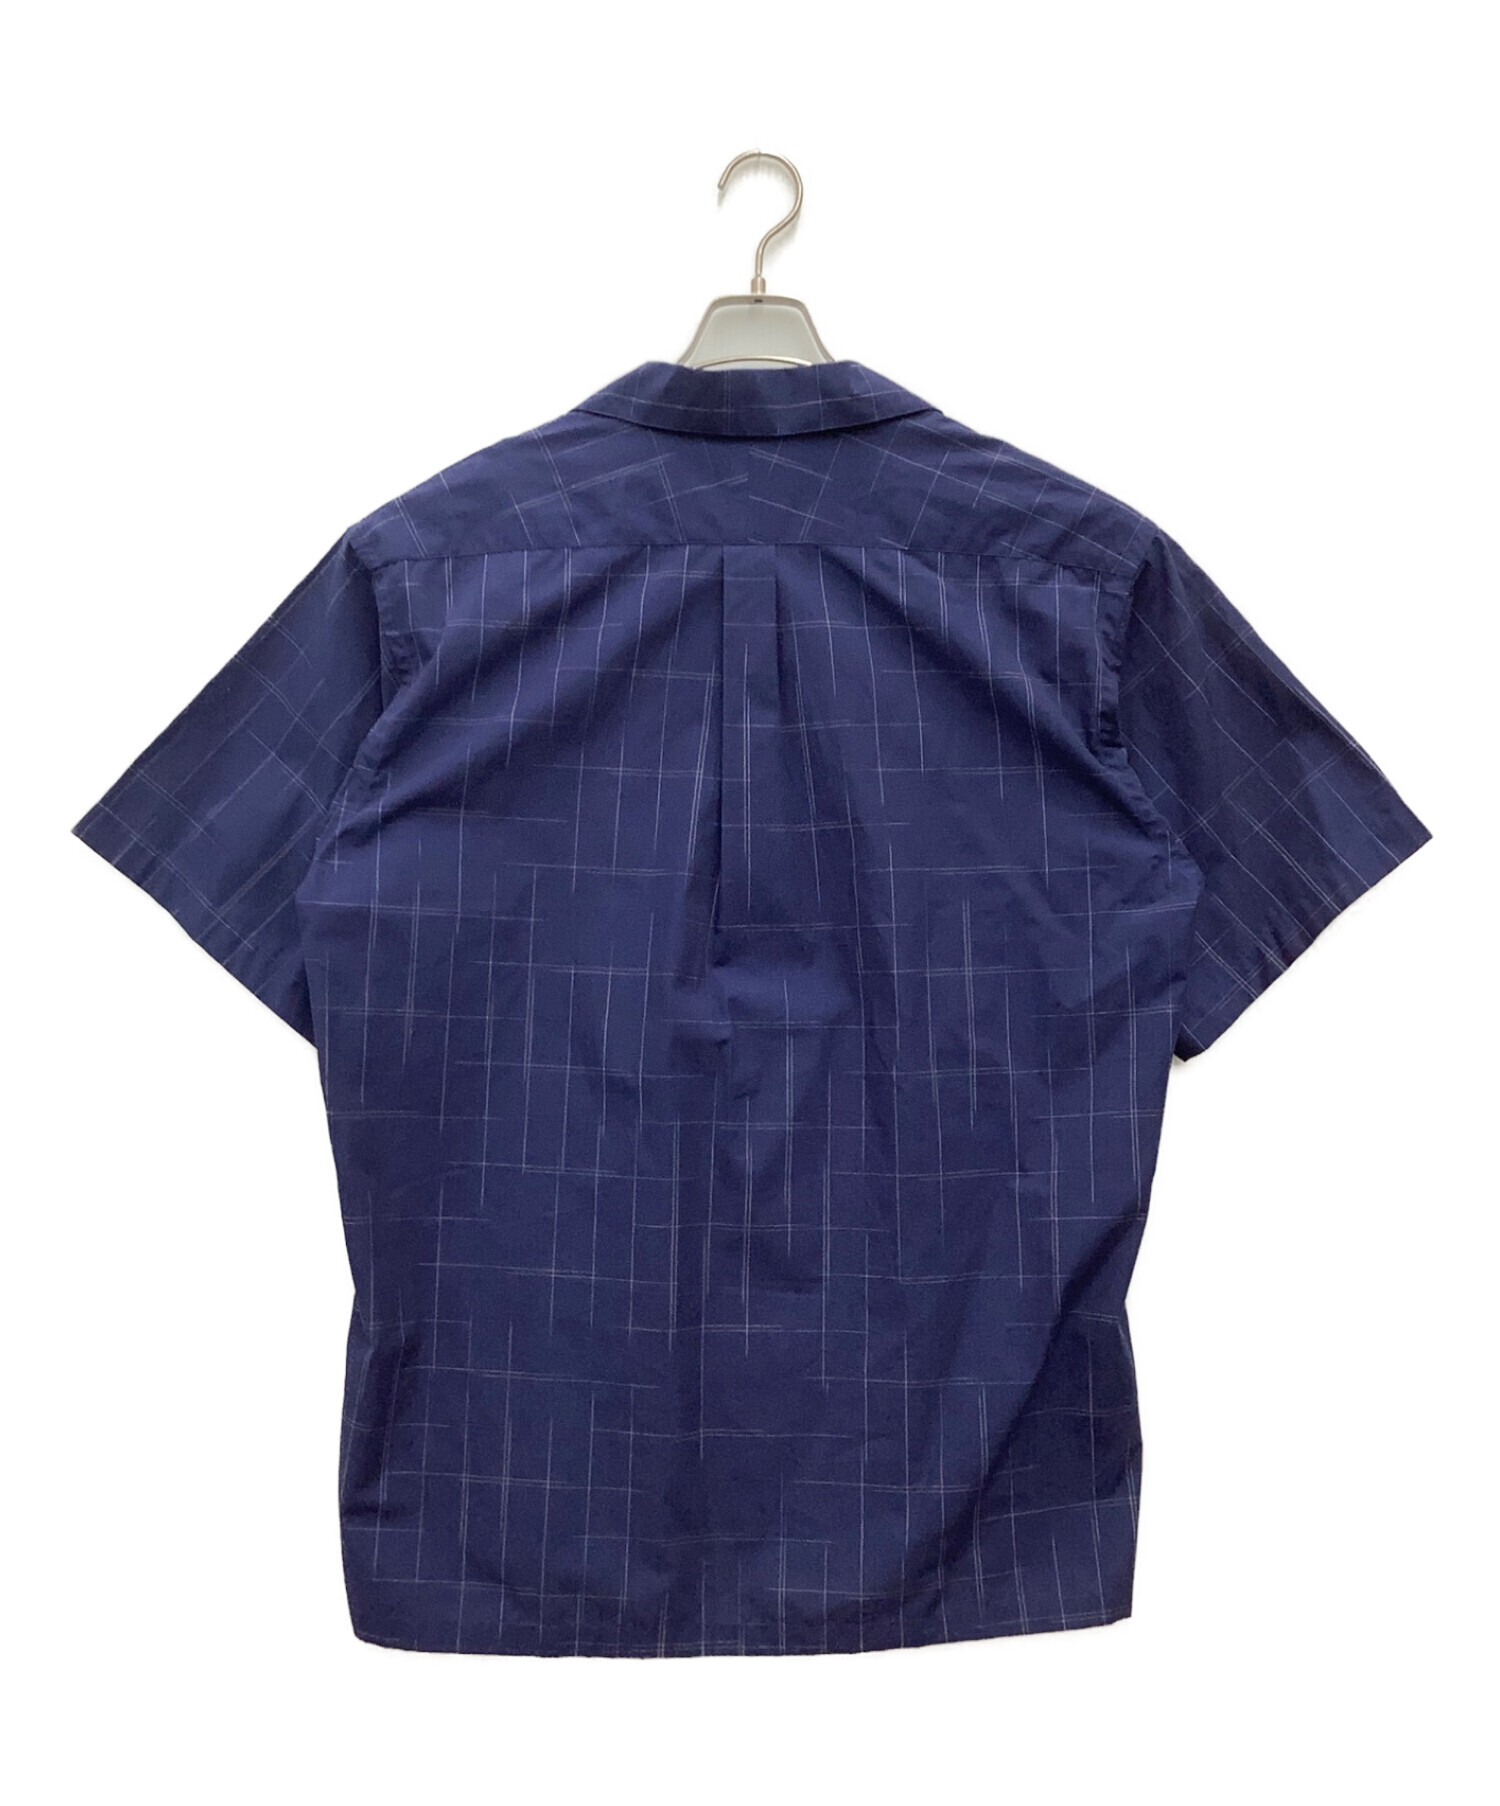 DESCENDANT (ディセンダント) オープンカラー半袖シャツ ネイビー サイズ:L